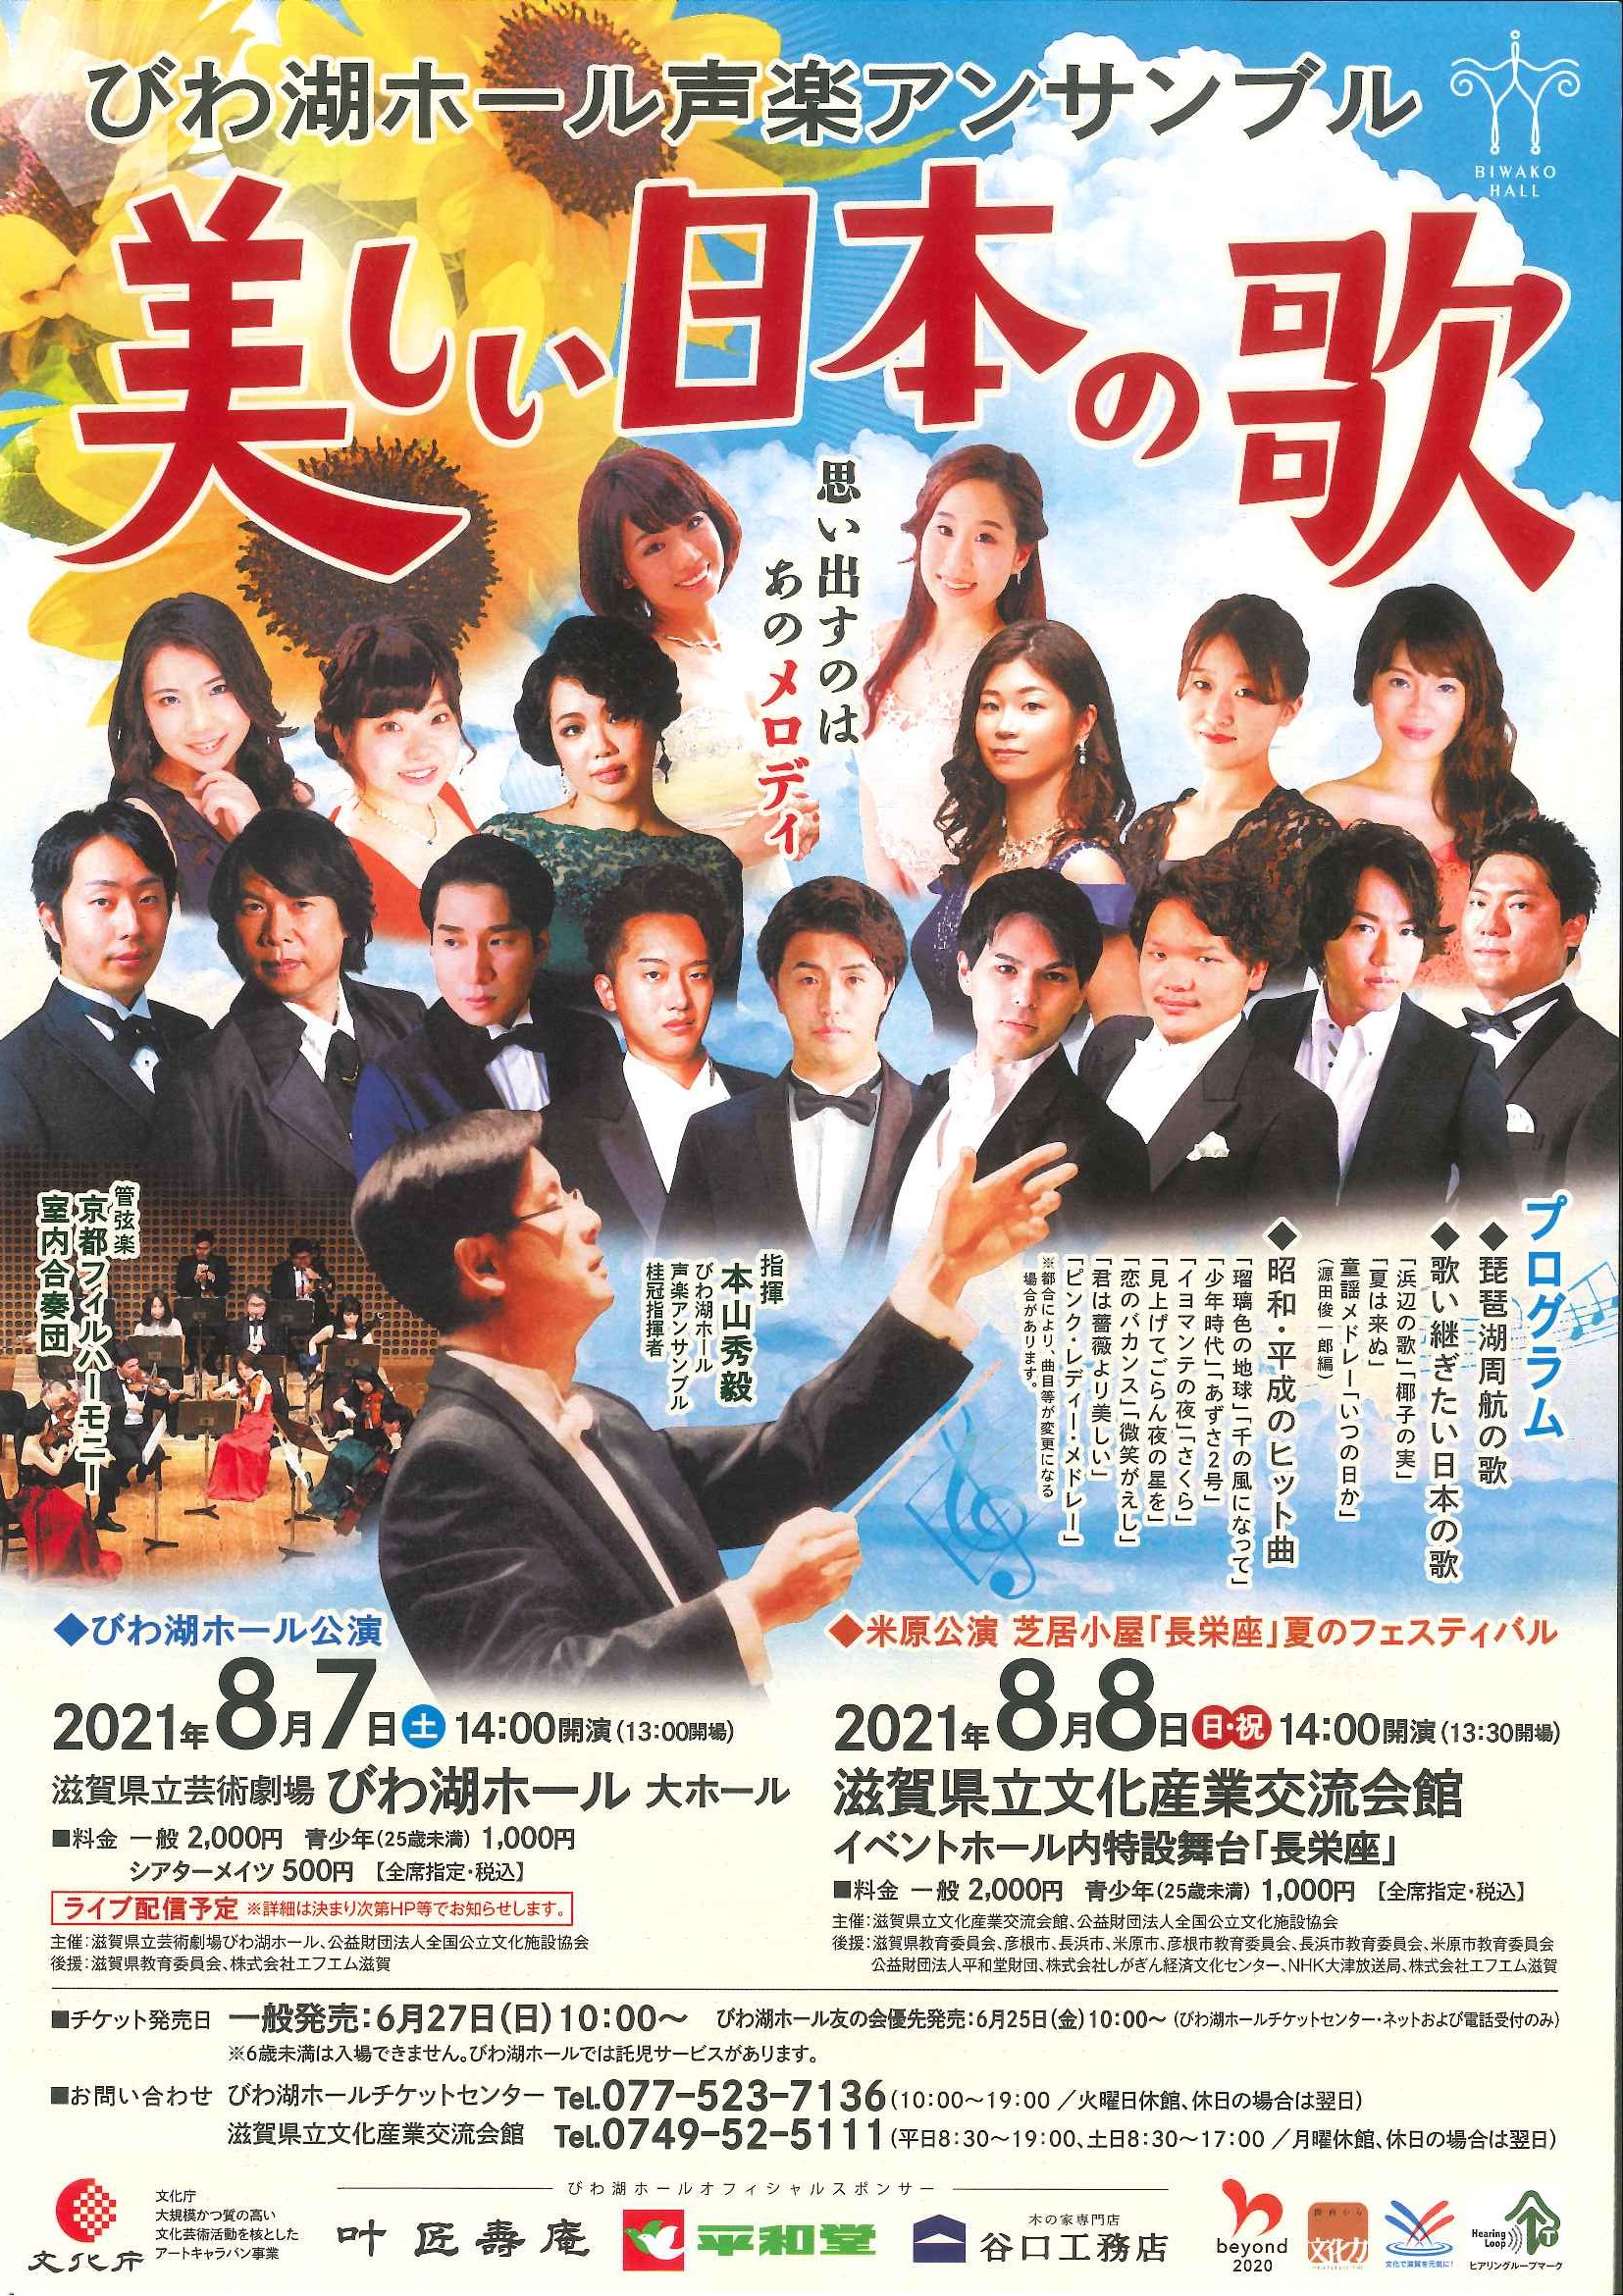 「びわ湖ホール声楽アンサンブル 美しい日本の歌」のチラシ